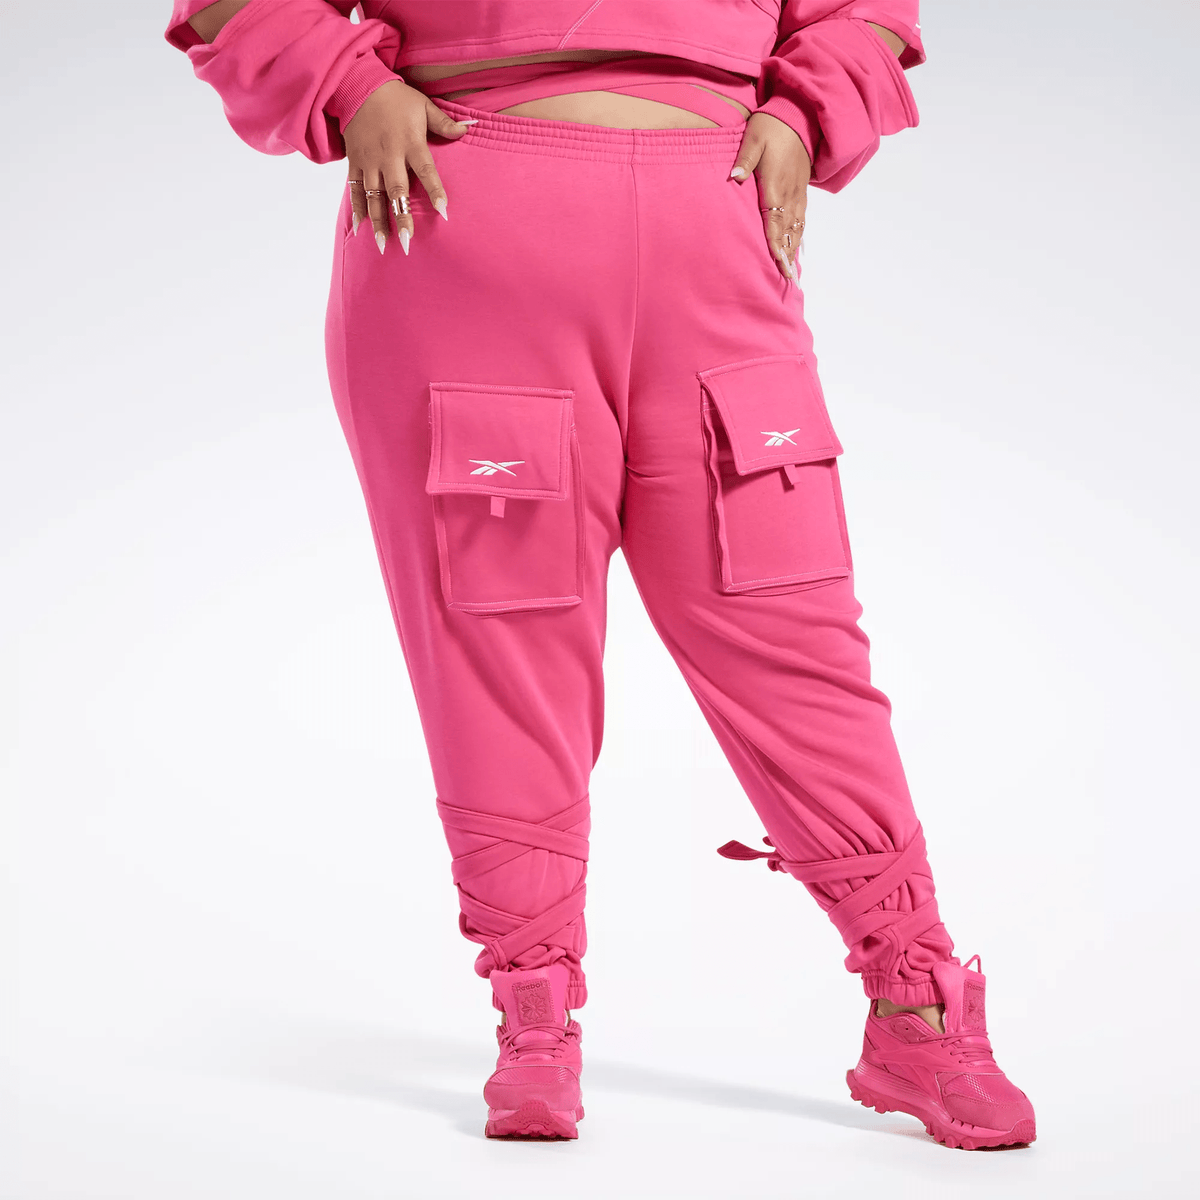 Reebok Women's Cardi B Knit Pants (Plus Size) Pink